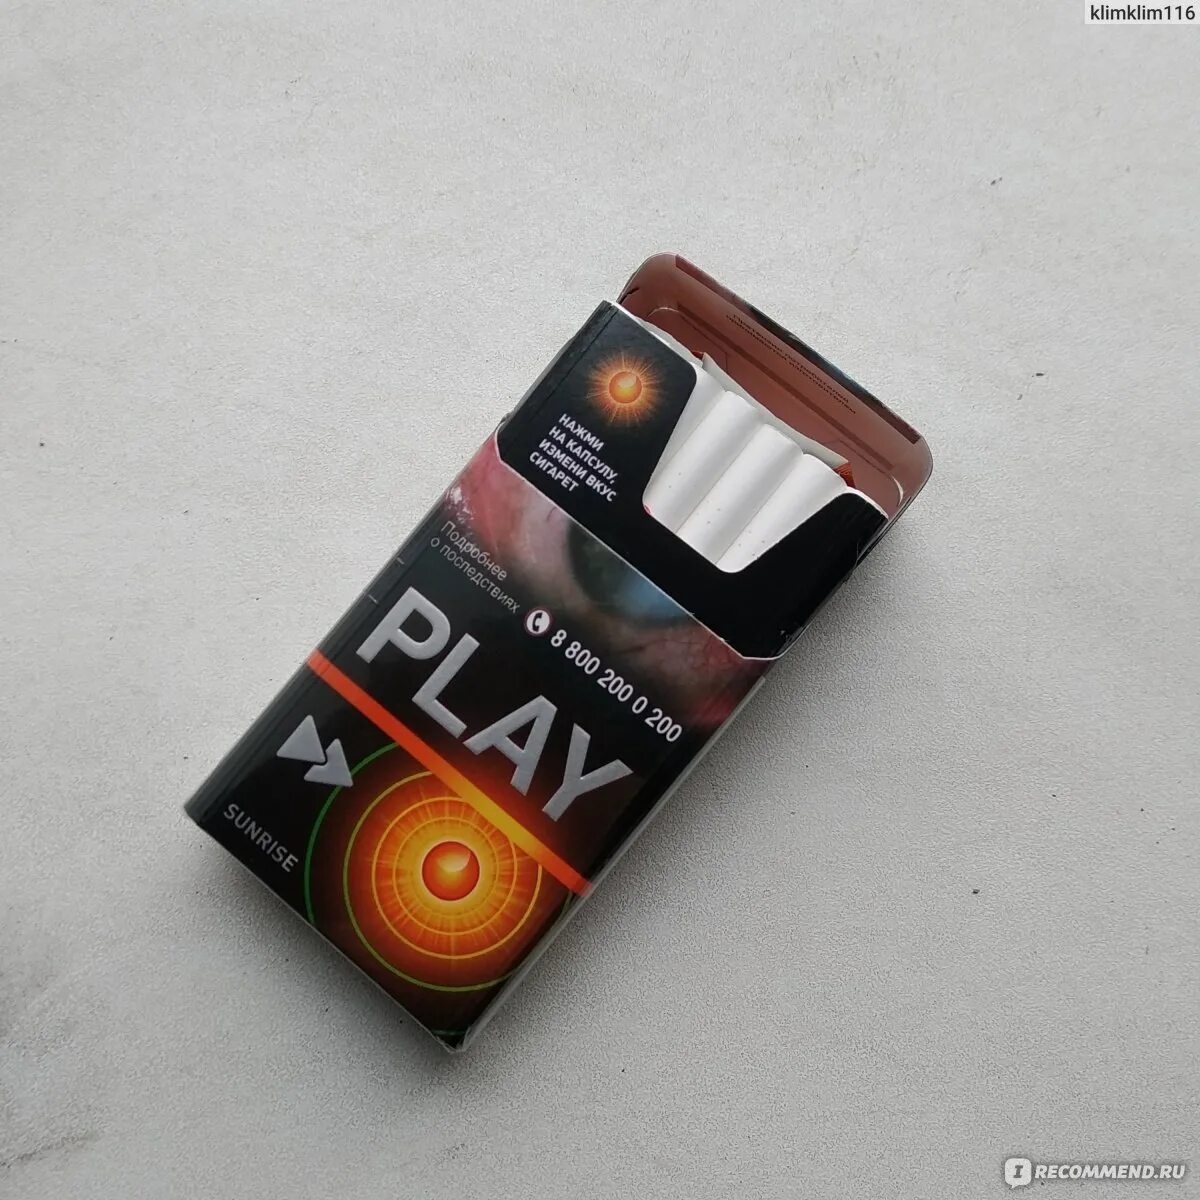 Play Sunrise сигареты. Плей компакт Санрайз. Play Sunrise сигареты оранжевые. Camel Compact с оранжевой кнопкой.